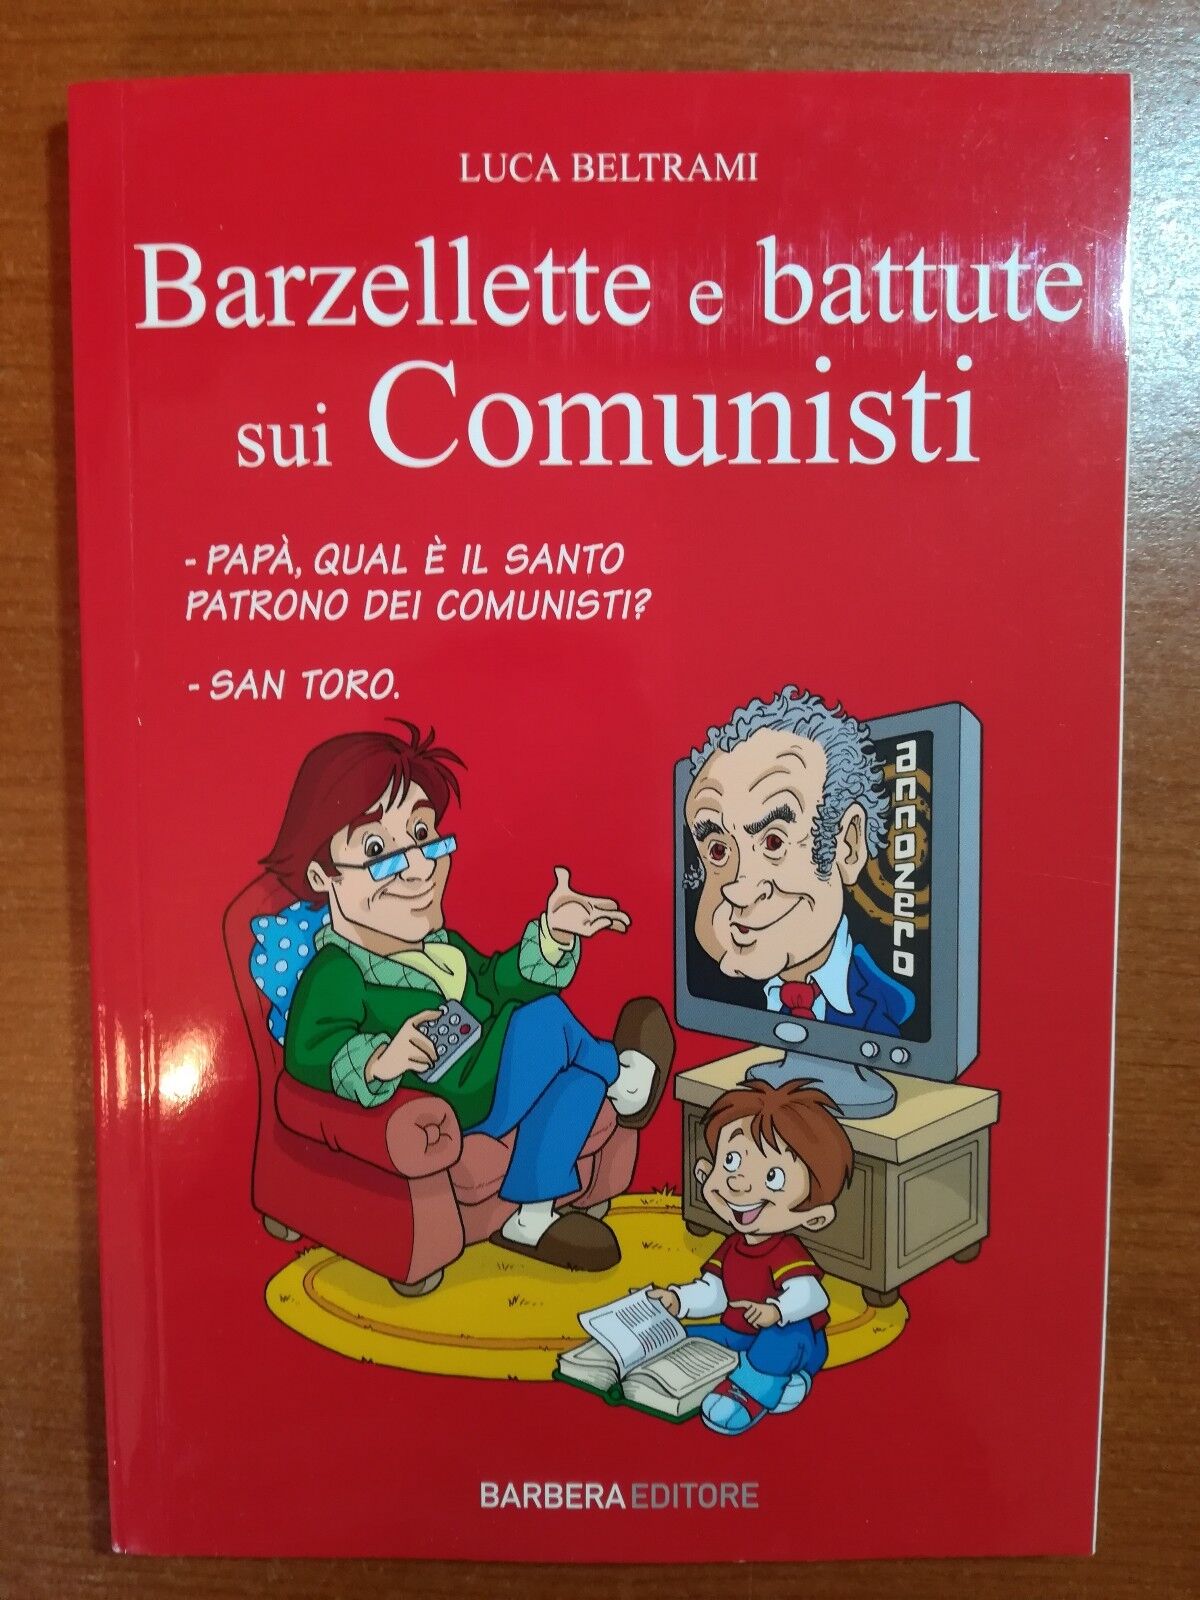 Barzellette e battute sui comunisti - L.Beltrami - Barbera - 2010-M